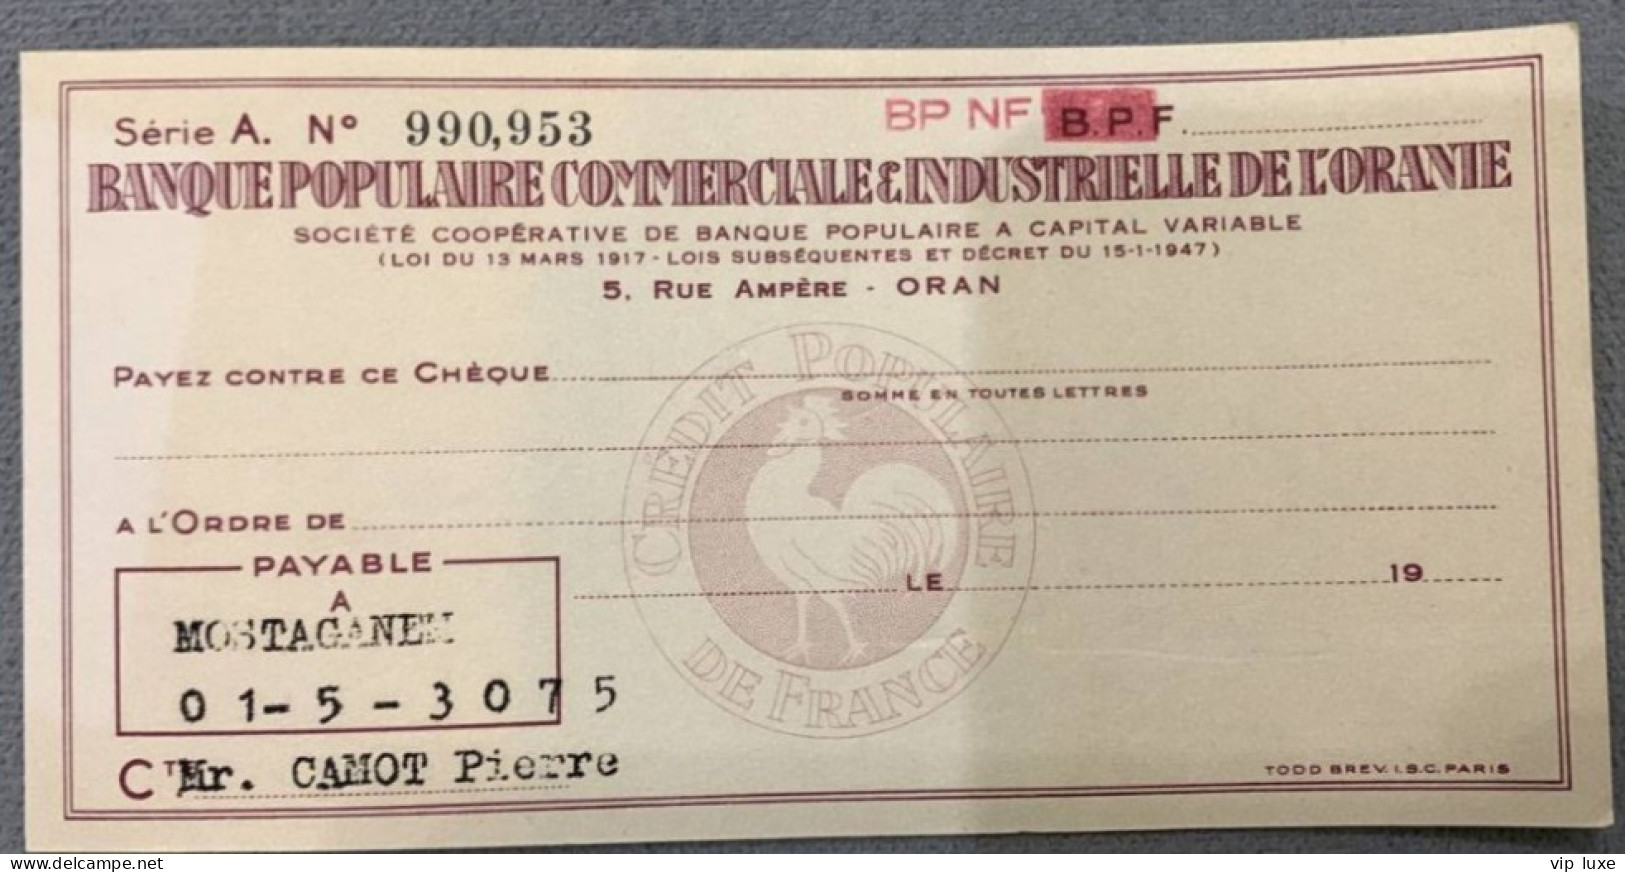 Cheque Banque Populaire Commerciale Et Industrielle De L'oranie 1956 - Cheques En Traveller's Cheques